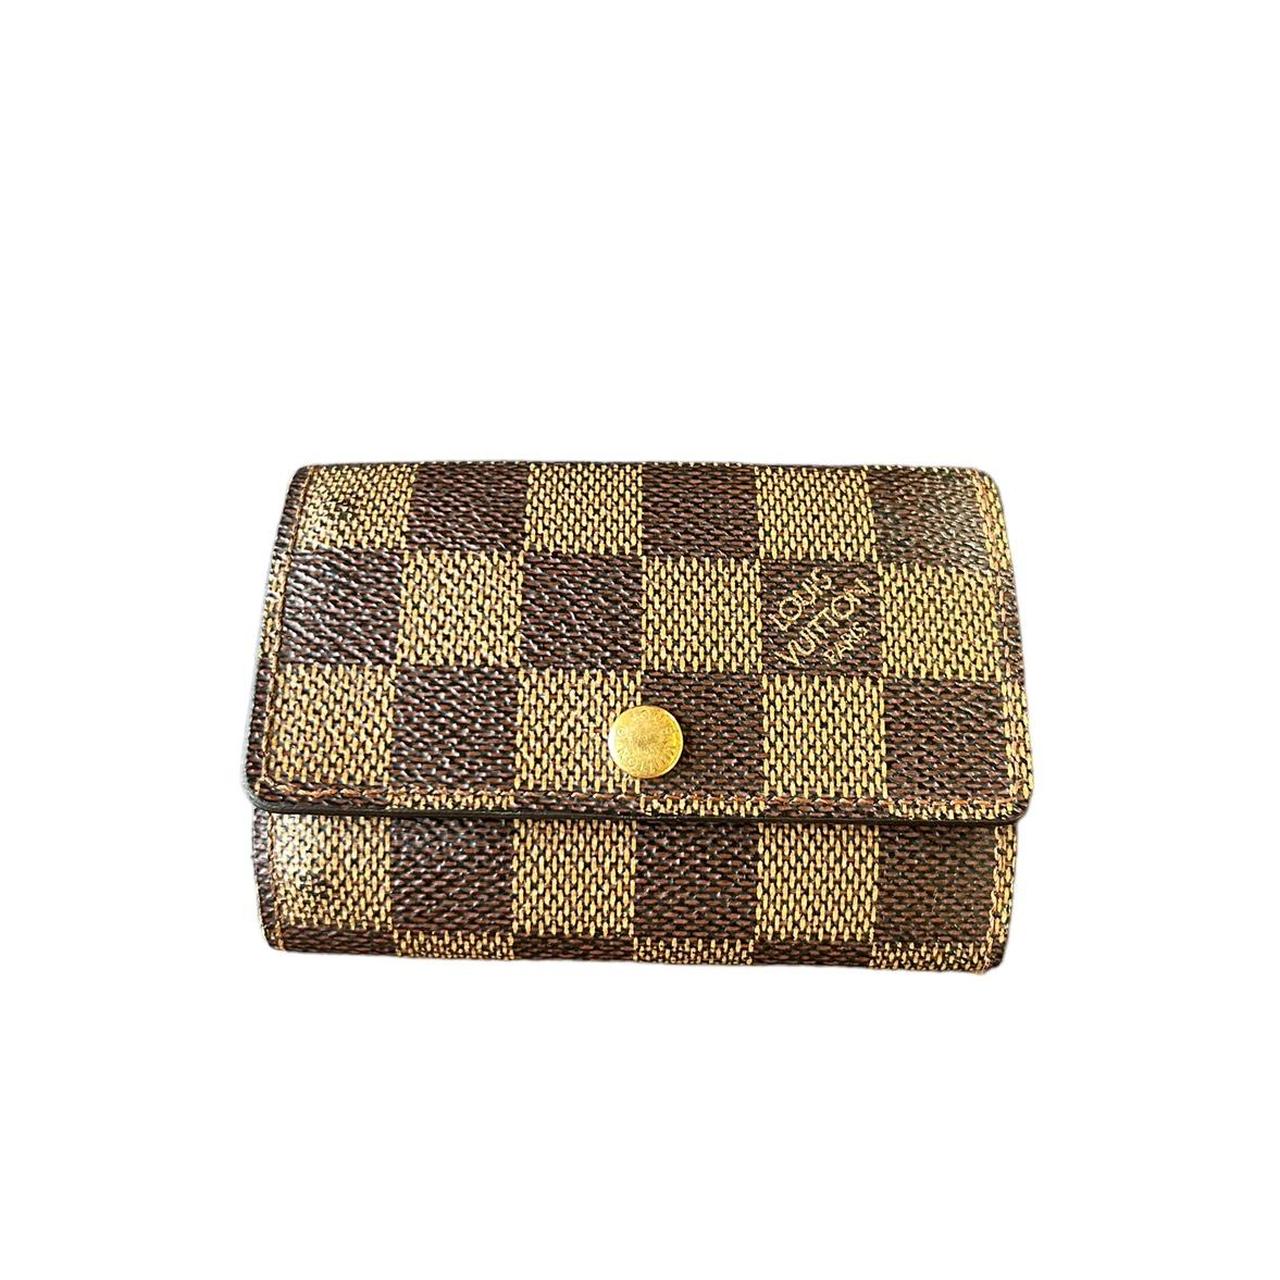 Louis Vuitton Monogram Key Wallet 100% authentic - Depop